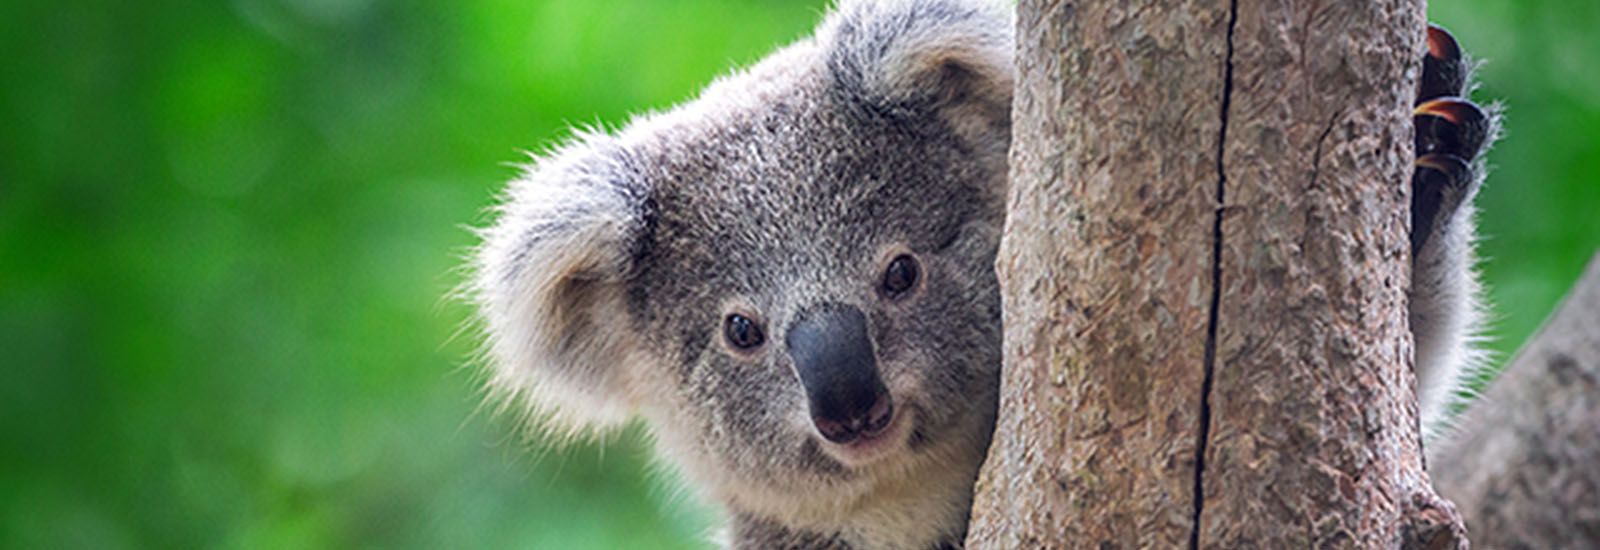 koala-news-banner banner image